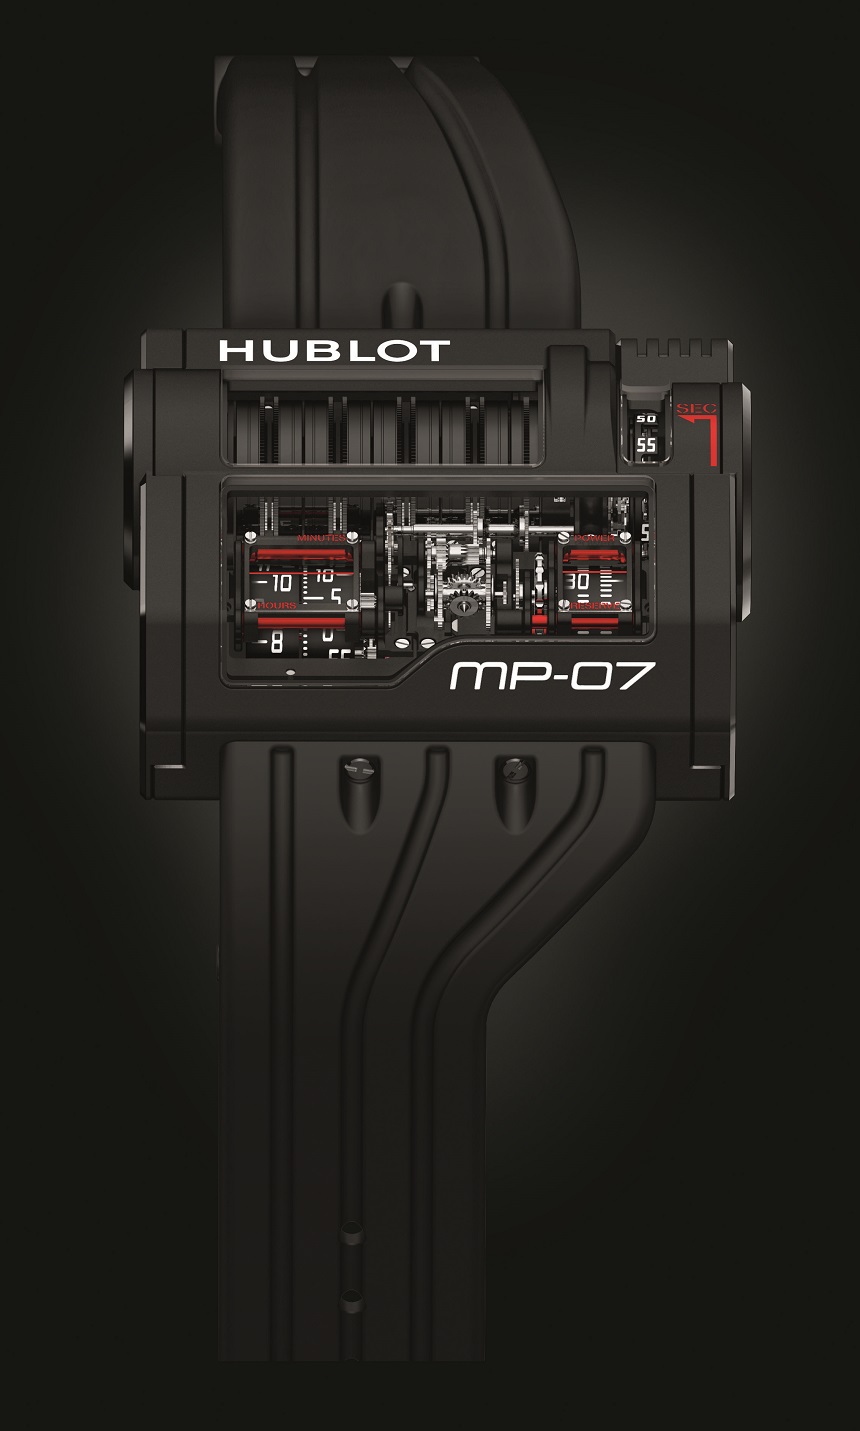 Hublot-MP-07-907.ND.0001.RX-watch